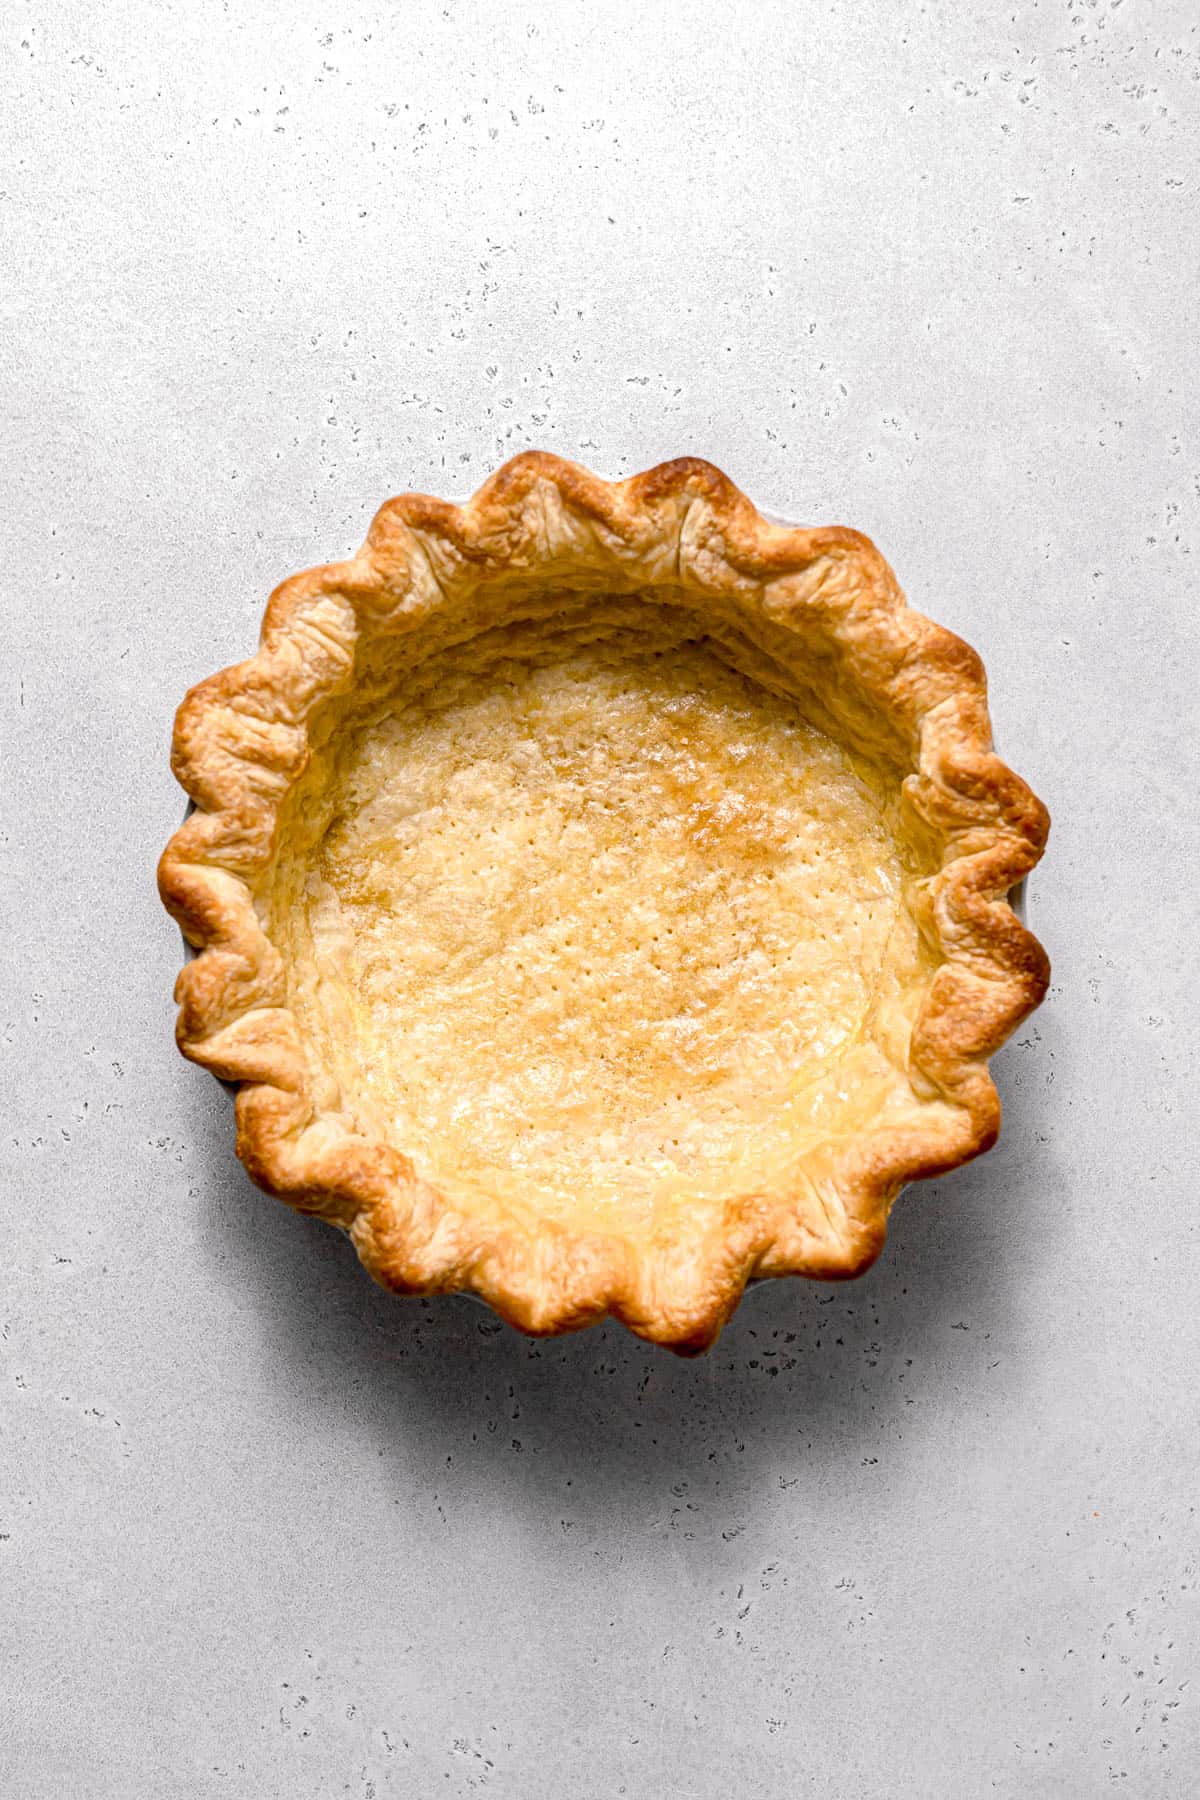 par baked pie crust